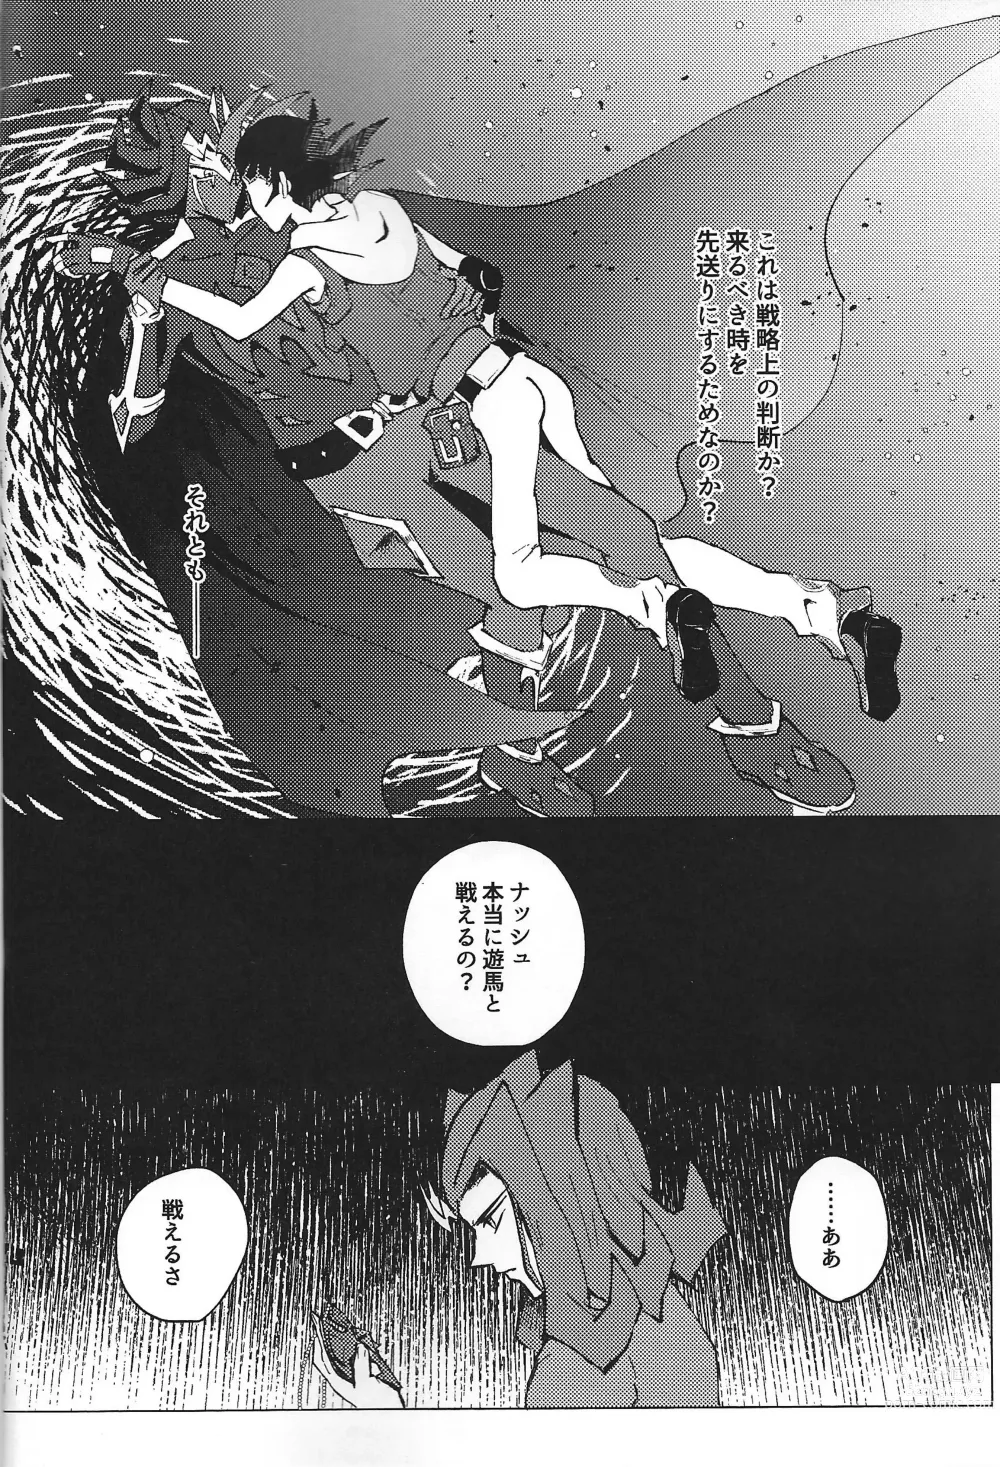 Page 14 of doujinshi ChaosPhantasma